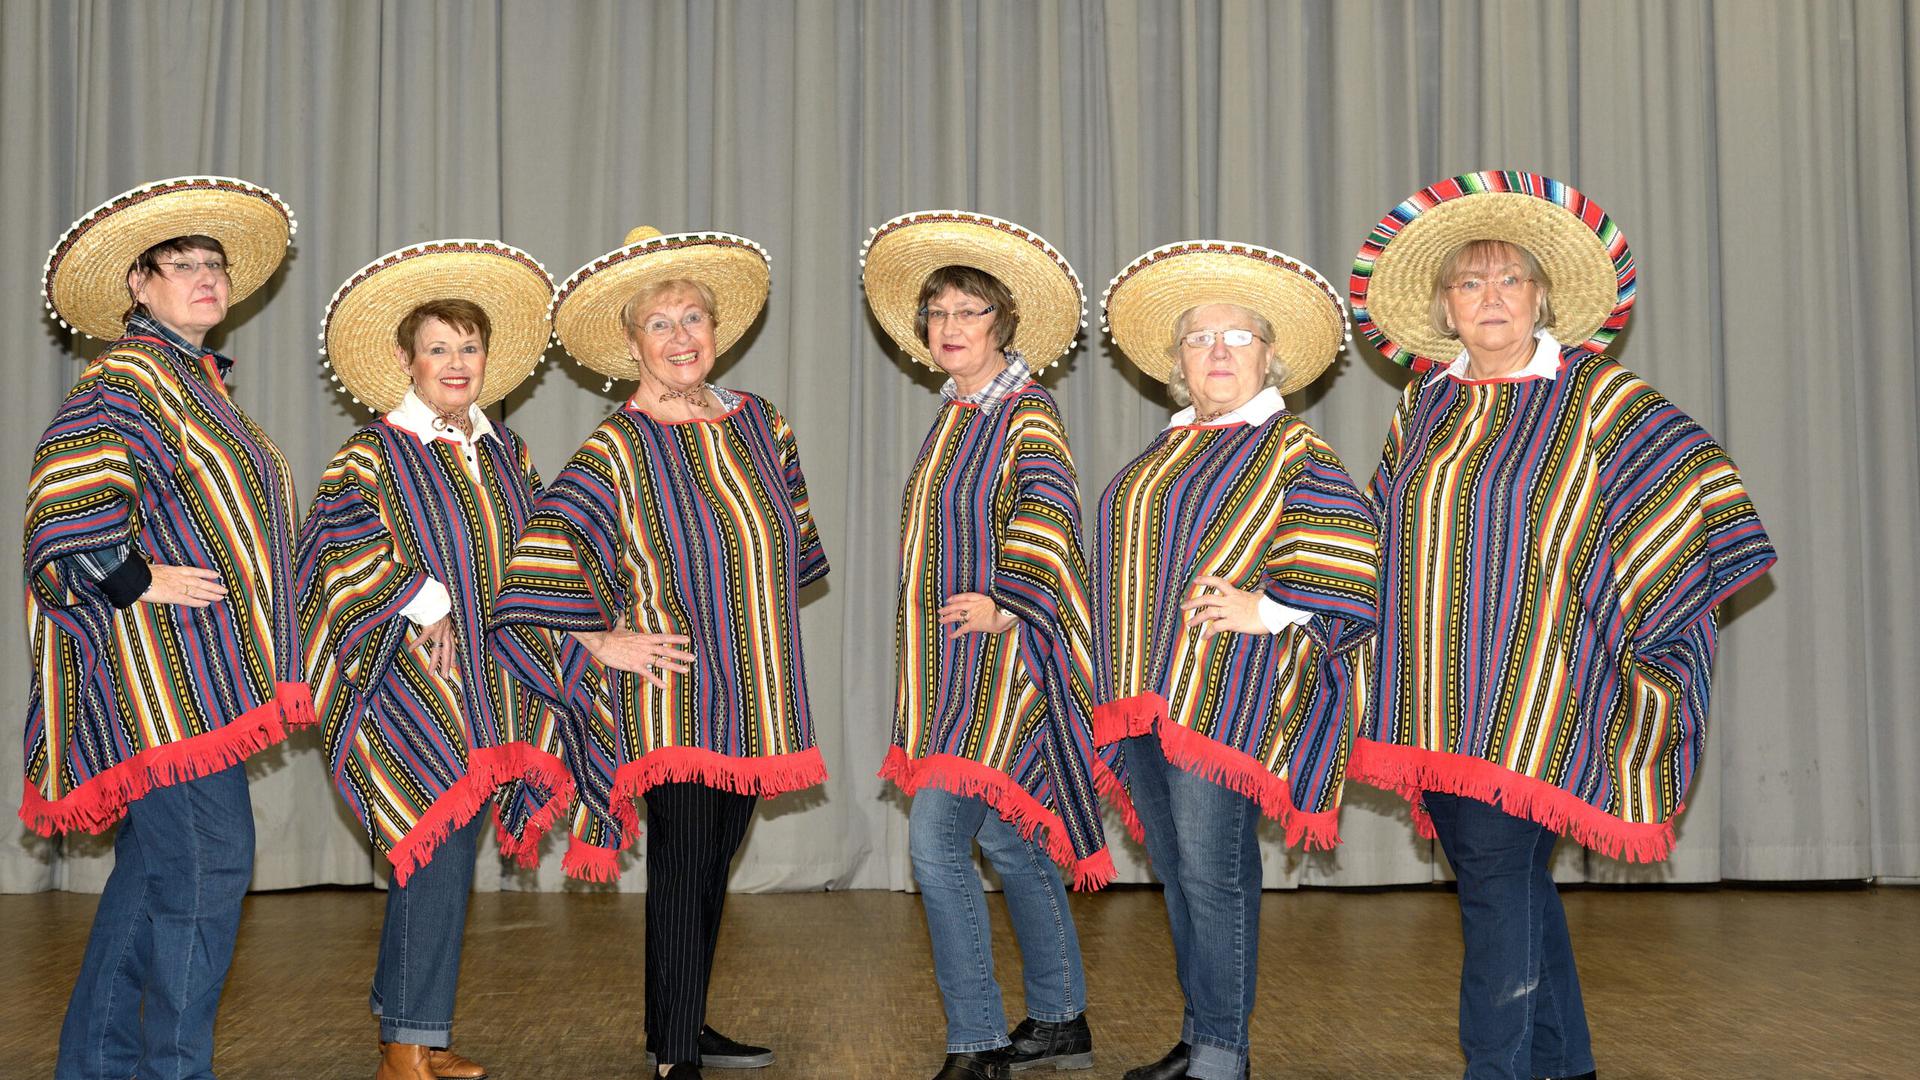 Der mexikanische Tanz mit Sombreros und Ponchos ist auf der Bundesgartenschau in Mannheim nicht erwünscht.